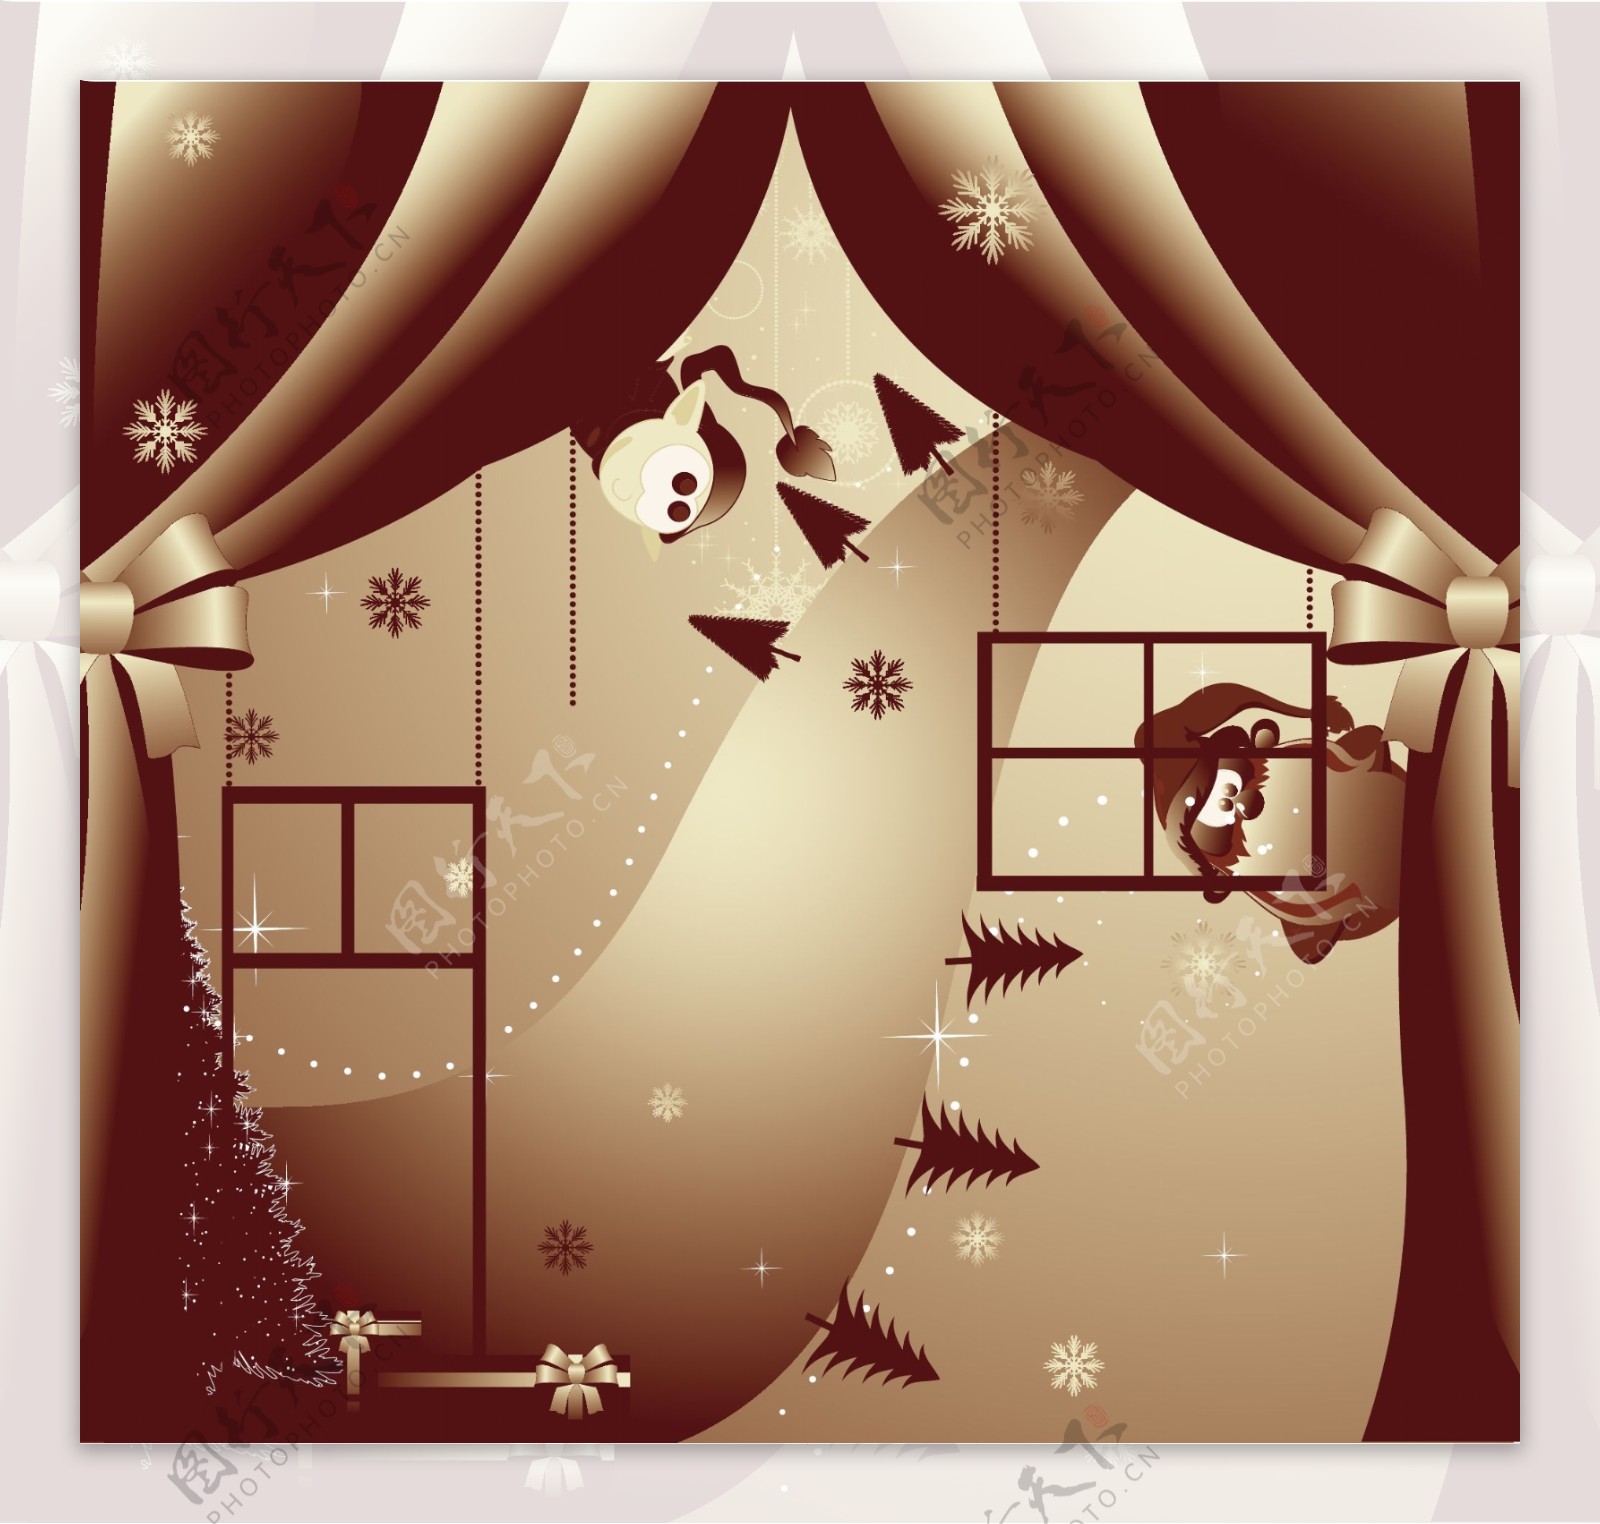 两个紫色圣诞插画风格EPS矢量素材